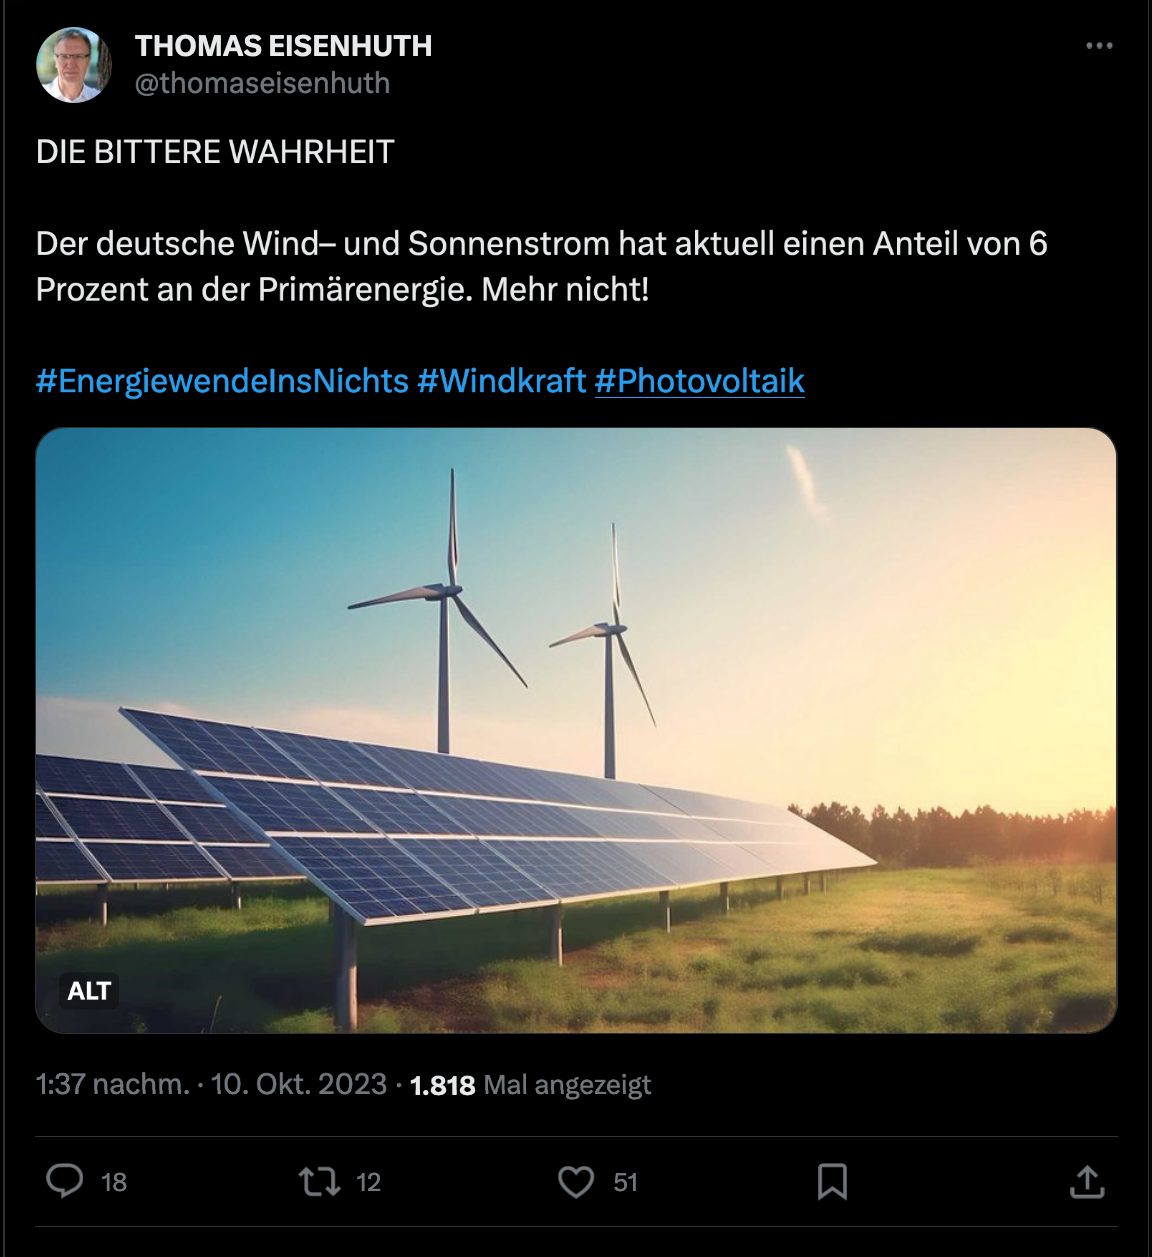 Dämlicher Tweet auf Elons dummem Netzwerk gegen Erneuerbare, der behauptet der deutsche Wind- und Sonnenstraom hat aktuell einen Anteil von 6 Prozent an der Primärenergie. 

Was halbwegs hinkommt aber komplett SINNLOS ist, weil die Primärenergie nicht zum Vergleich taugt.